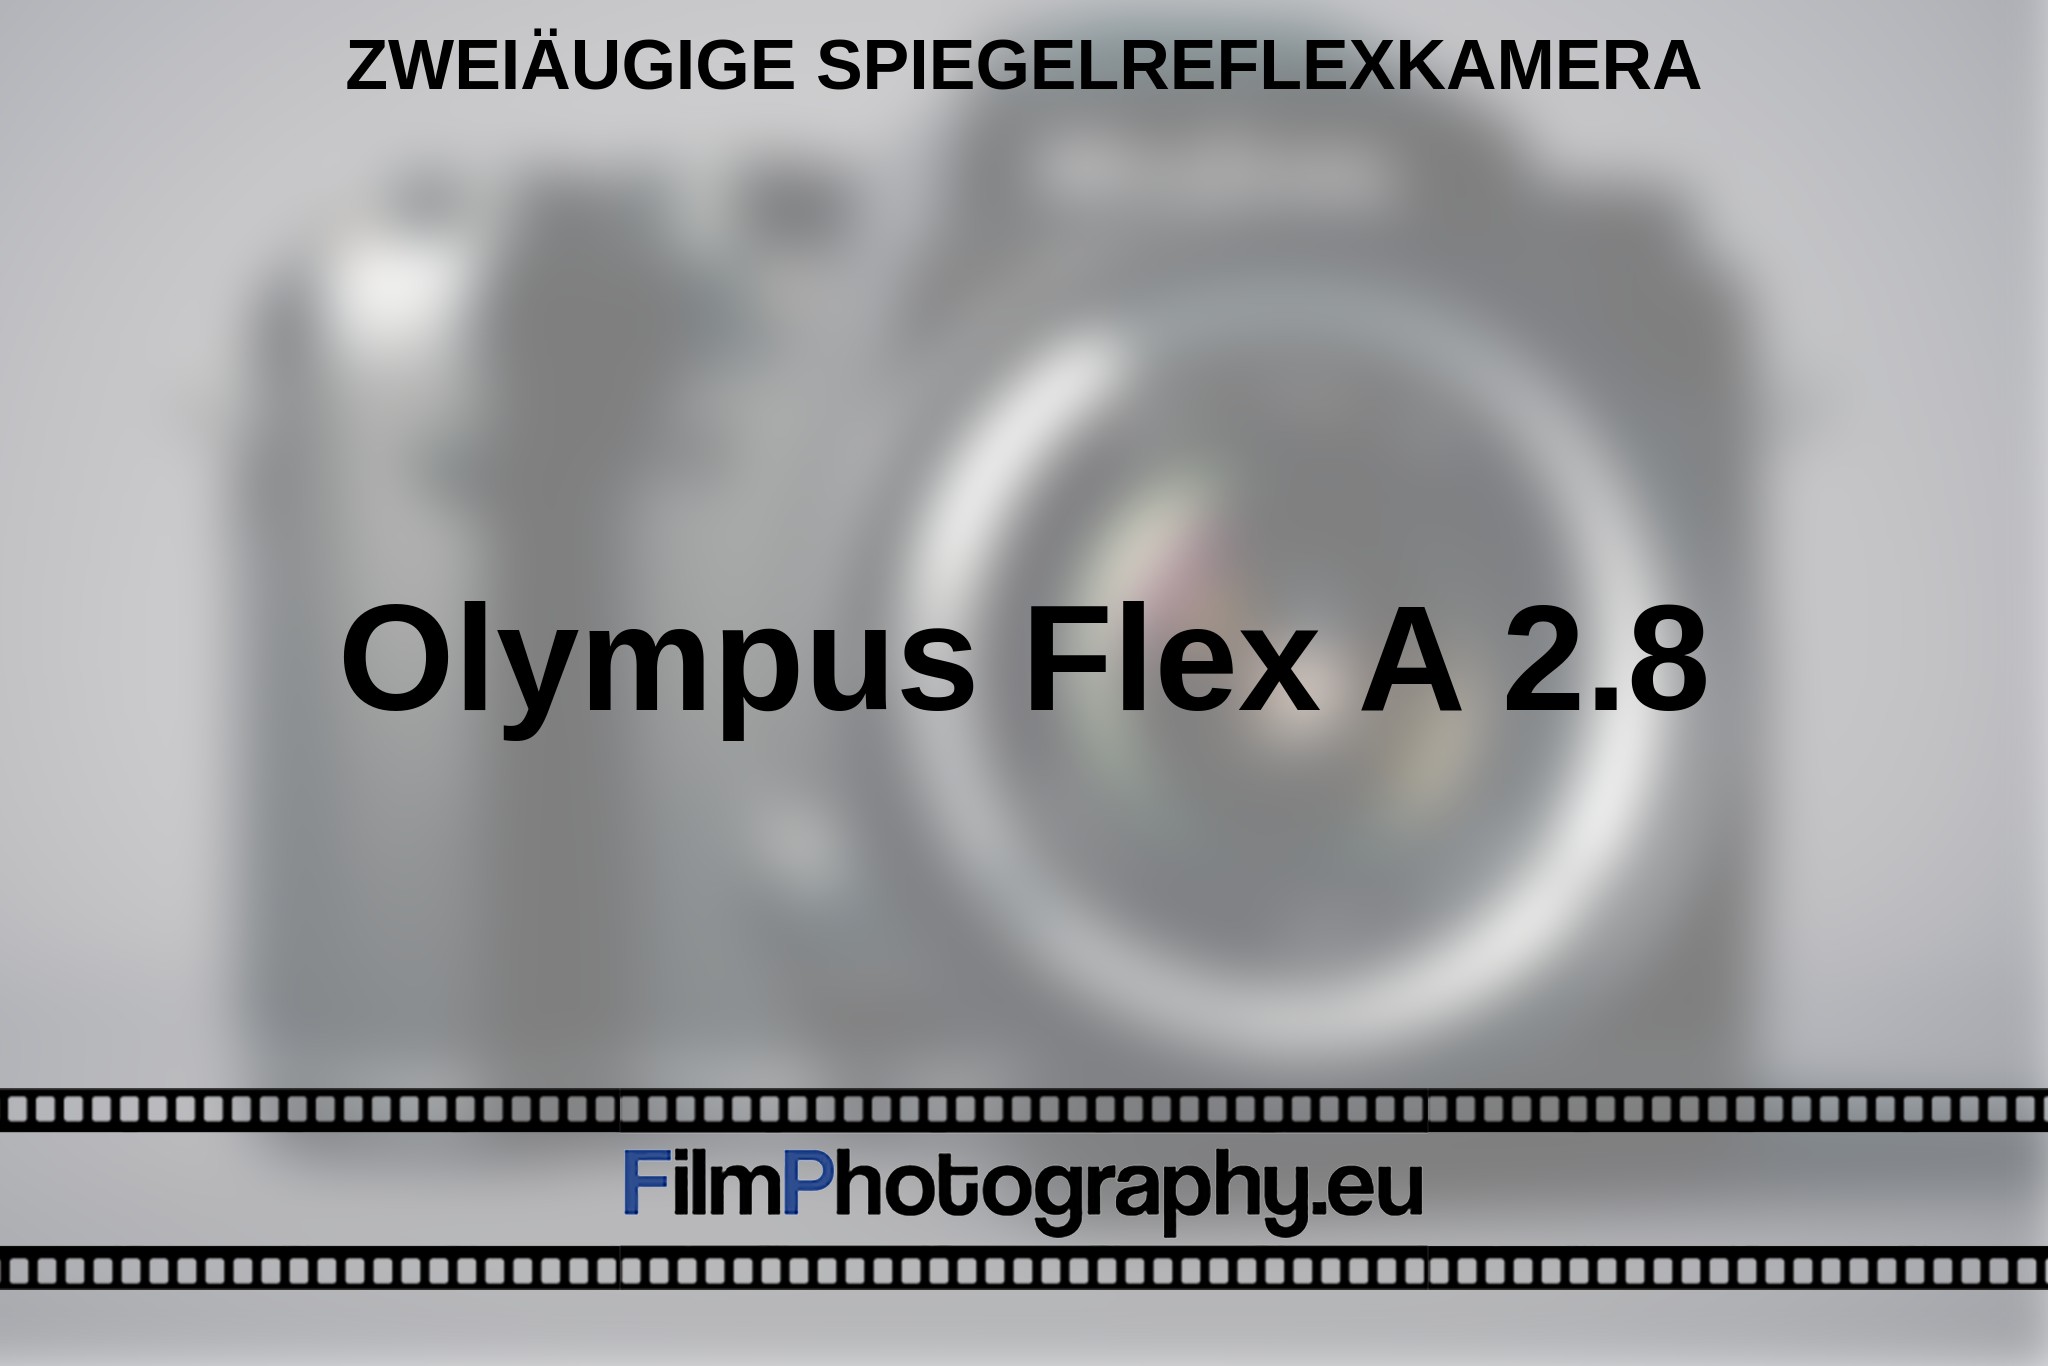 olympus-flex-a-2-8-zweiaeugige-spiegelreflexkamera-bnv.jpg